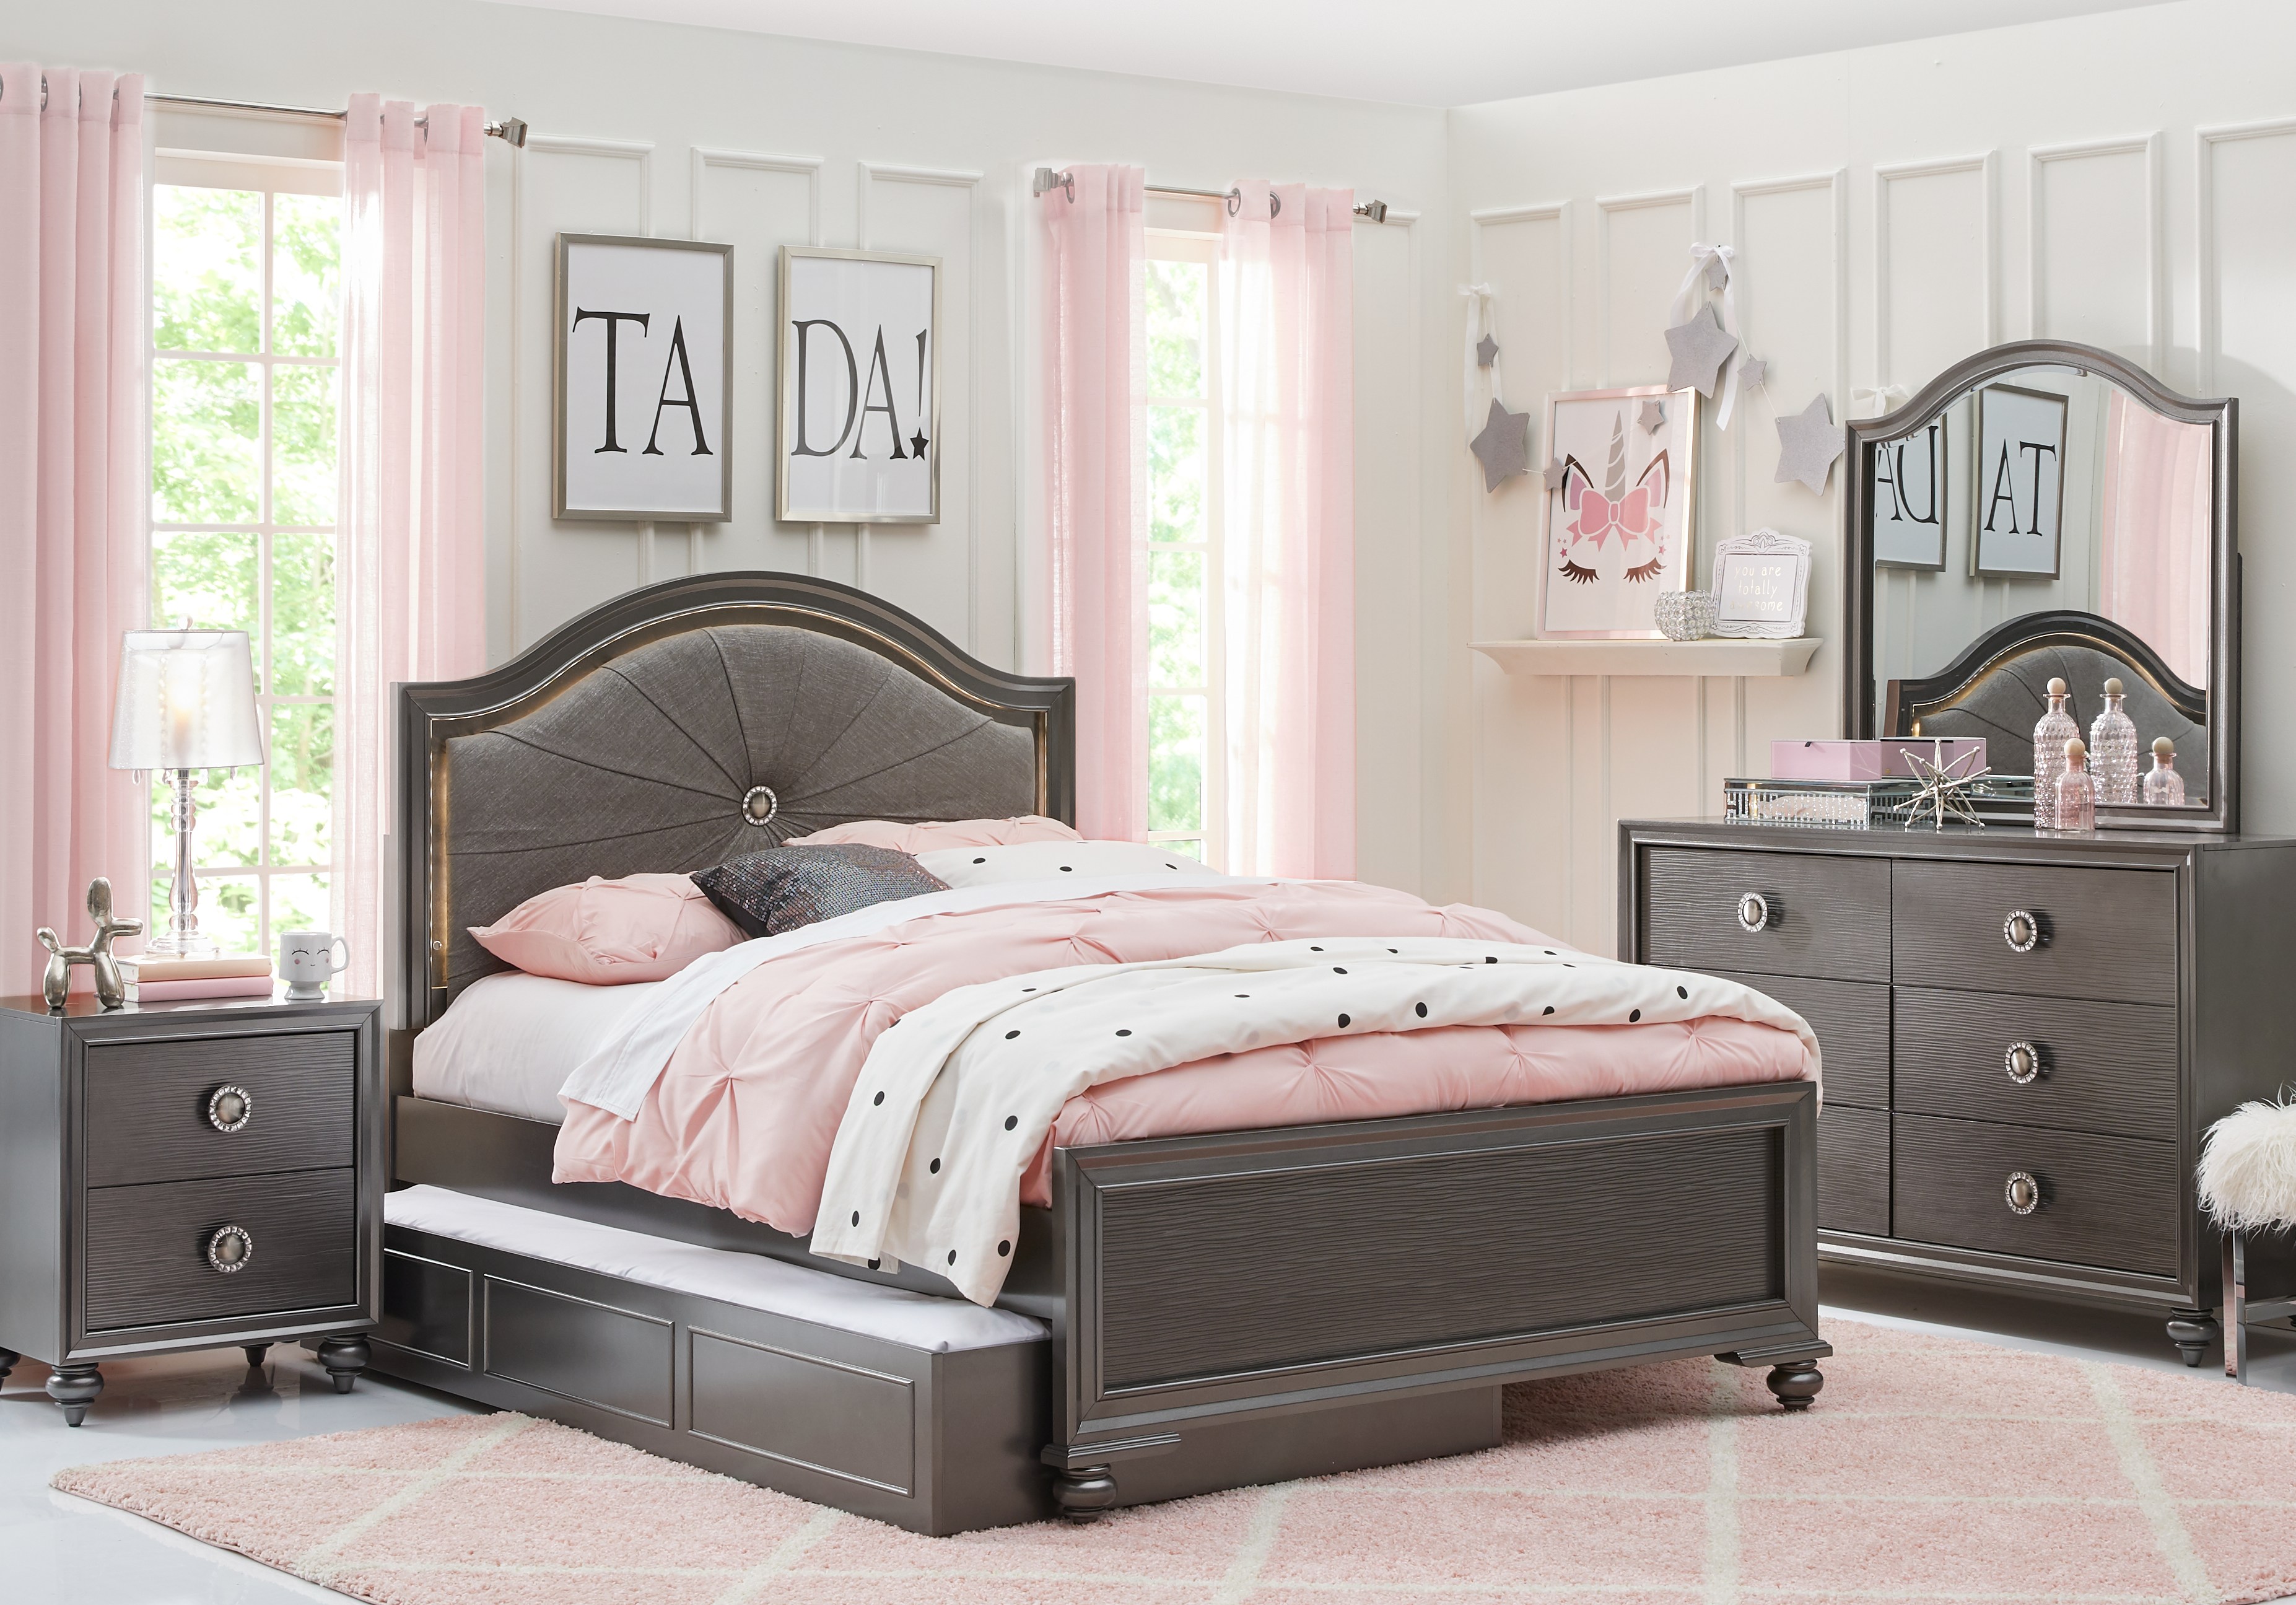 bedroom furniture set for teenage girls